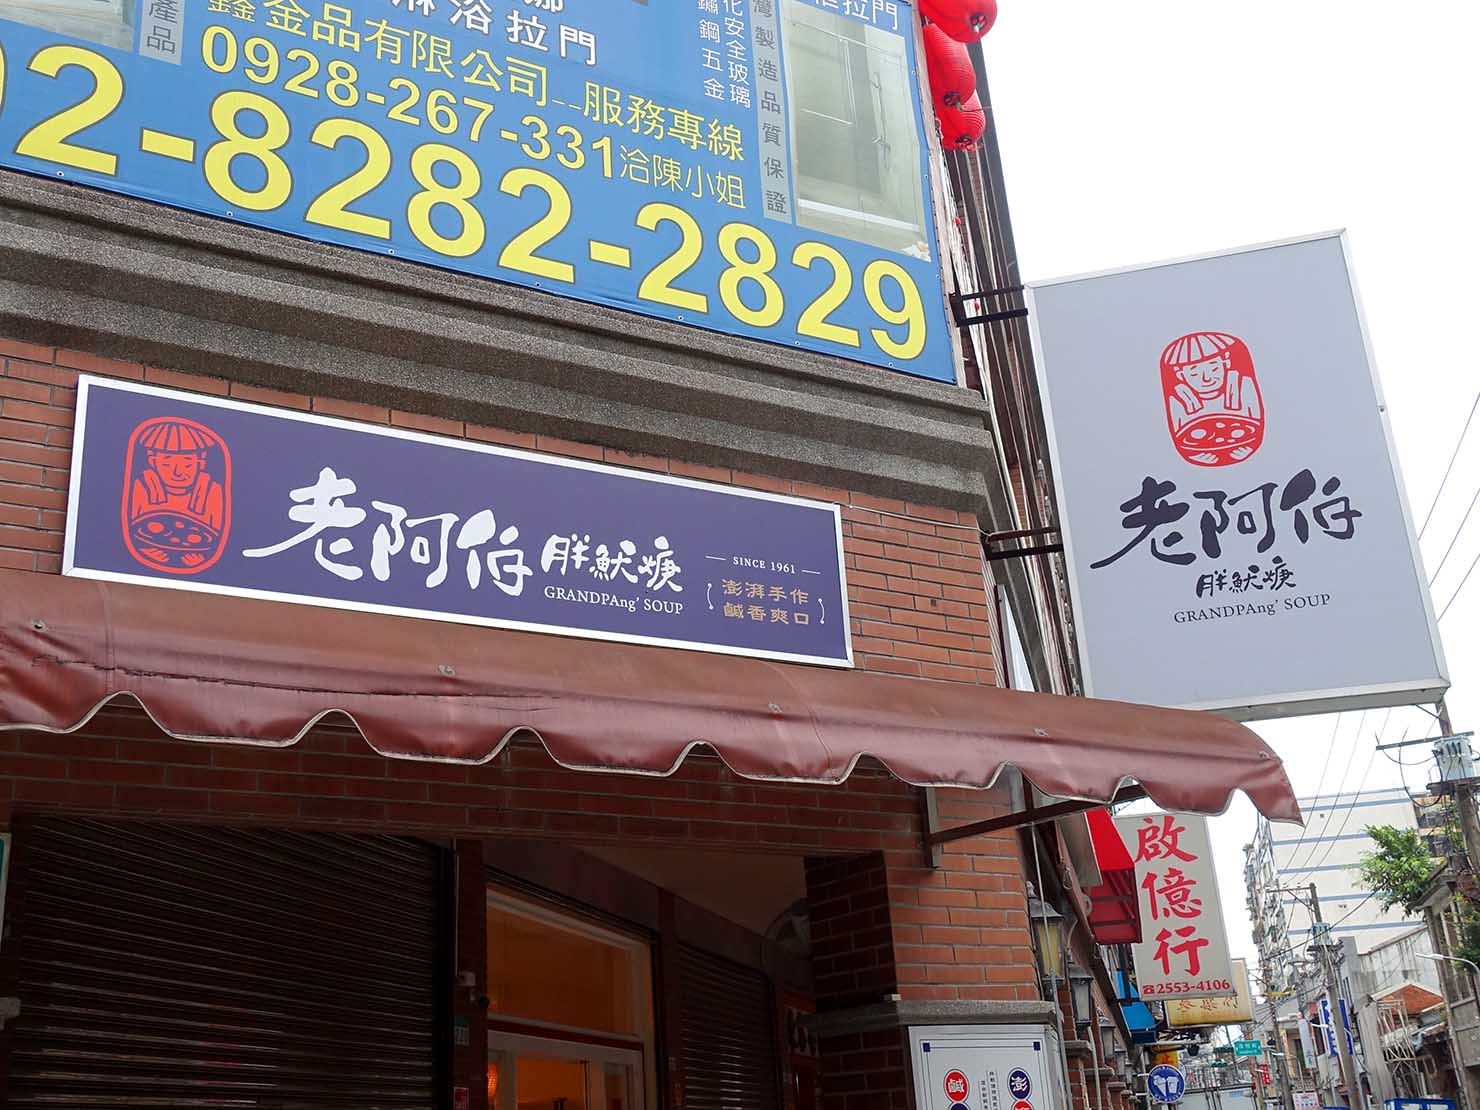 台北・迪化街の伝統グルメ店「老阿伯胖魷焿」の看板